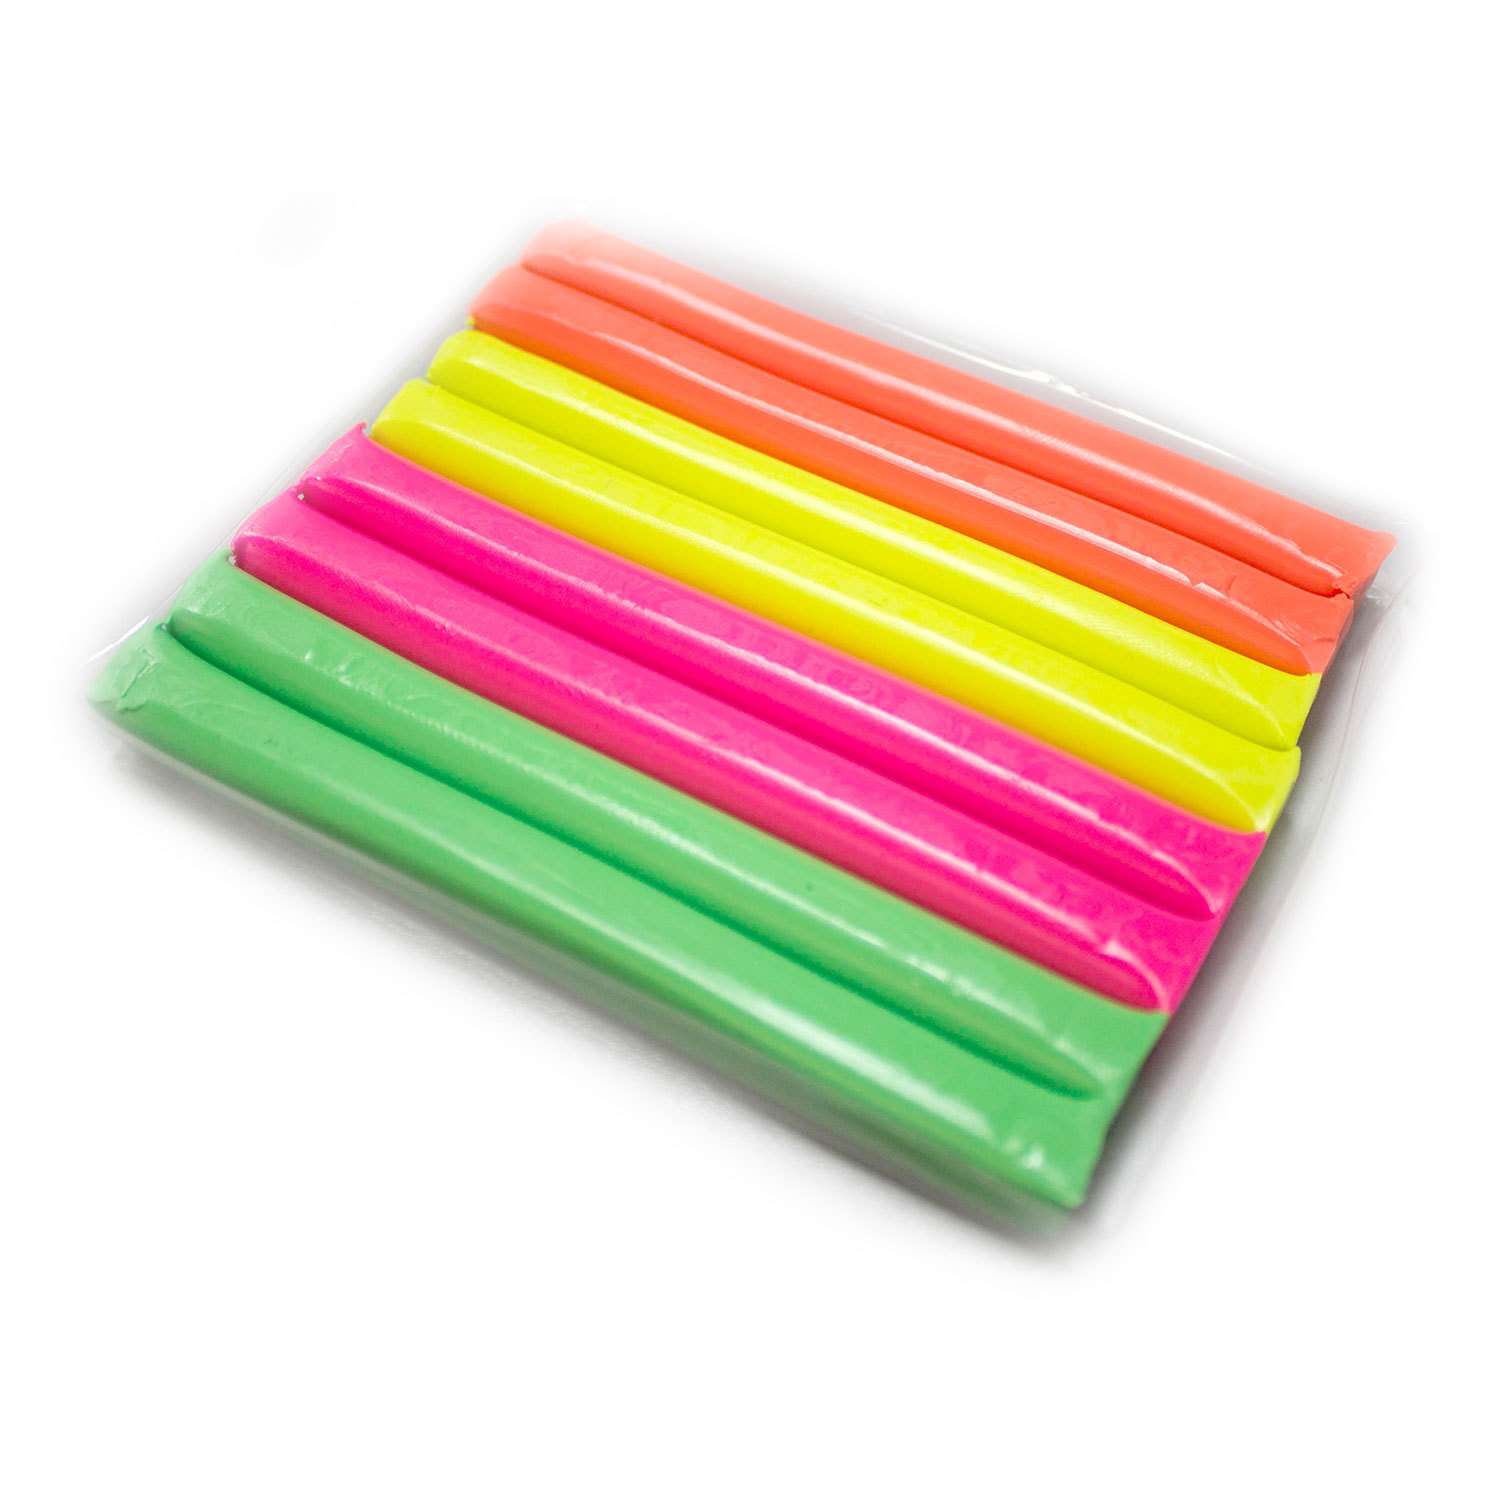 Пластилин Crayola Незасыхающий 8 шт в ассортименте - фото 4